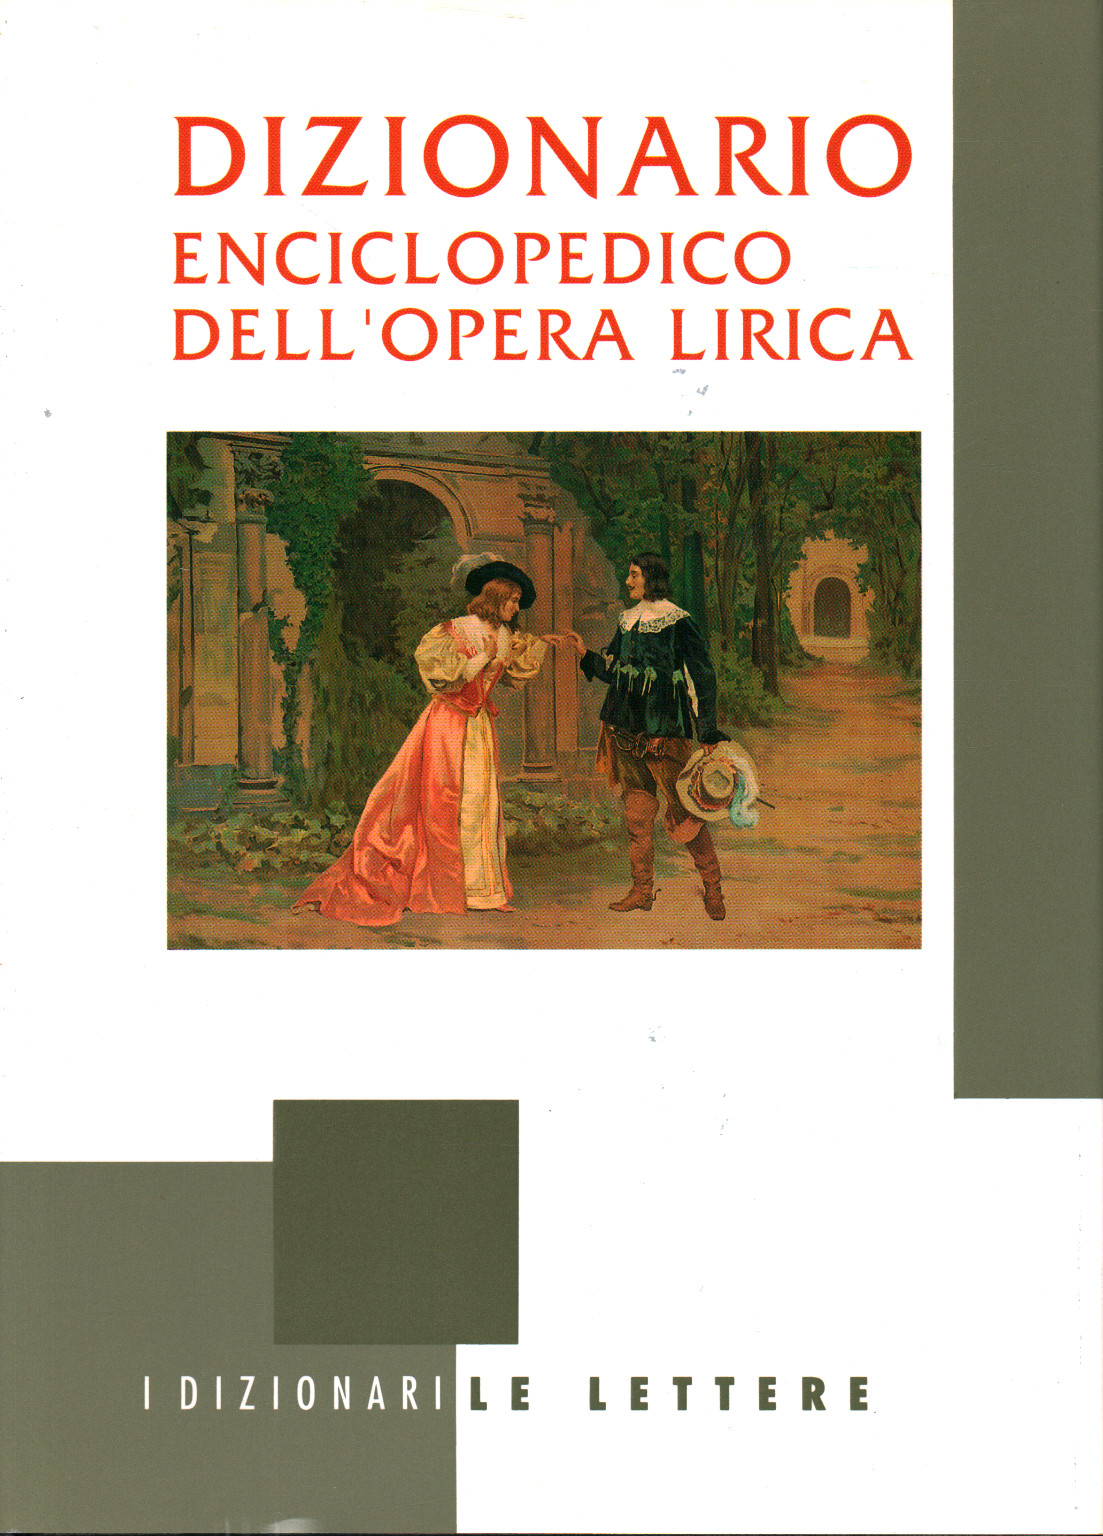 Le dictionnaire encyclopédique de dell opera, s.un.